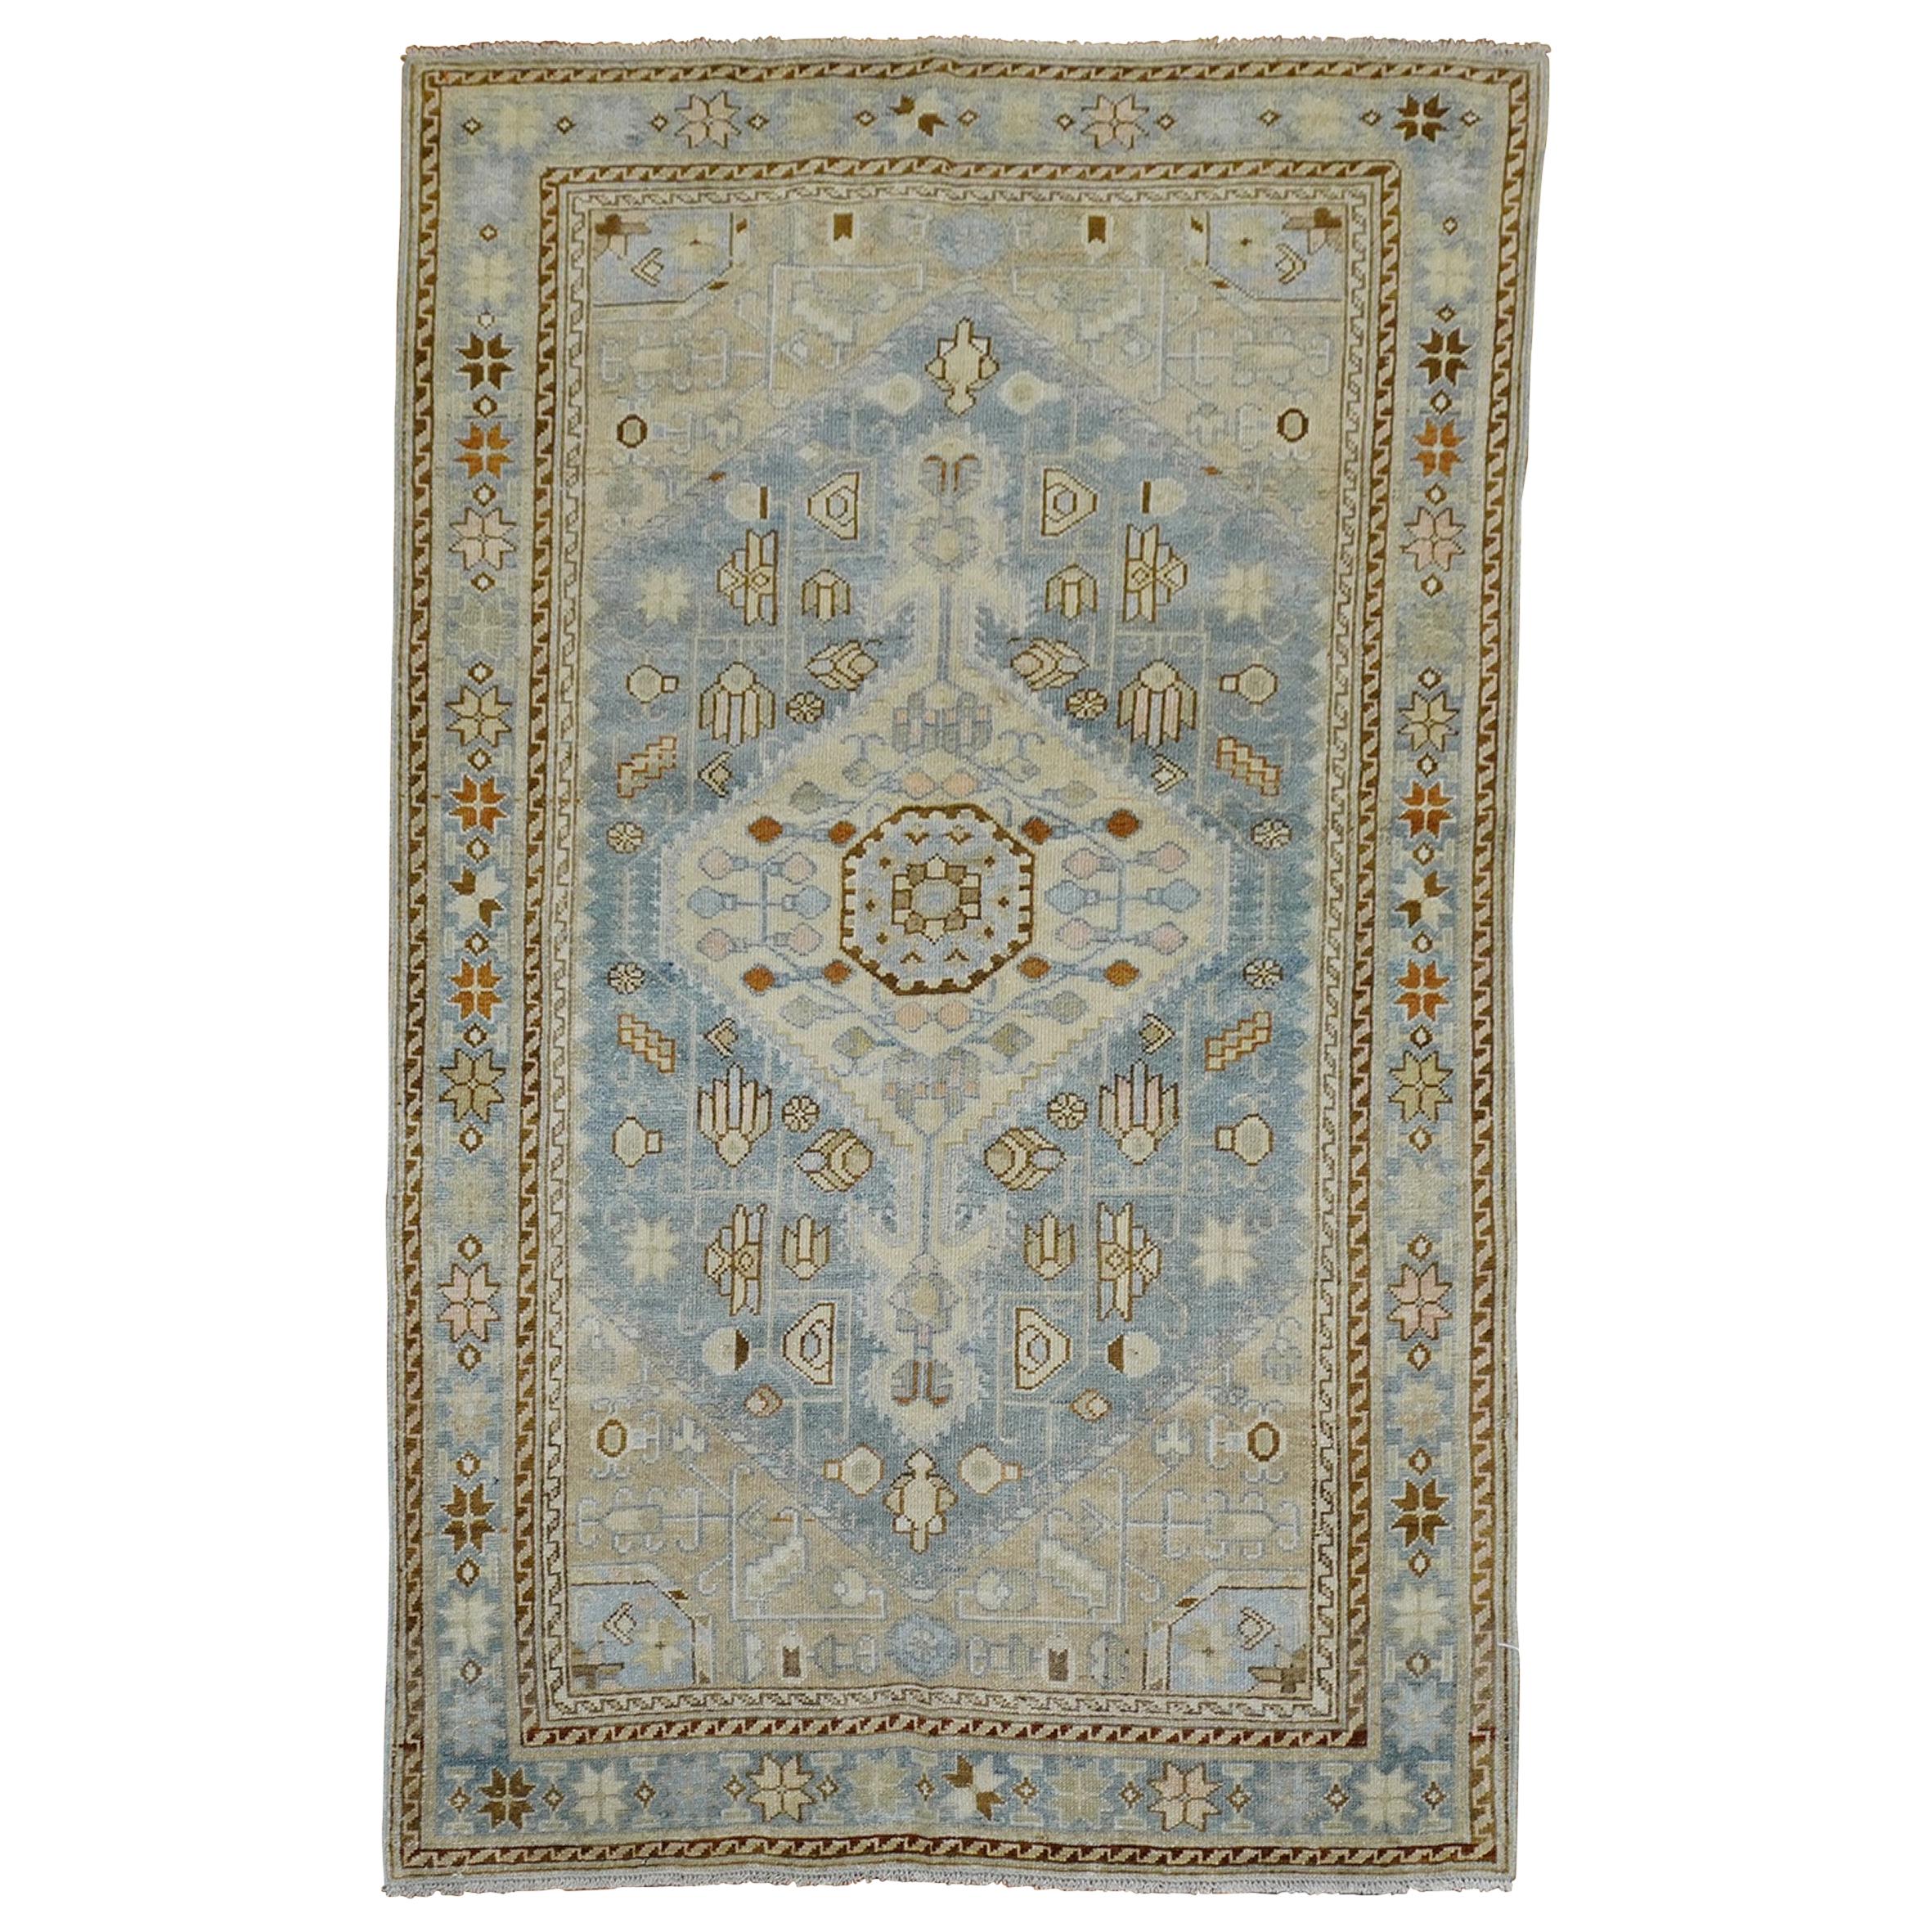 Klarer hellblauer elfenbeinfarbener antiker persischer Malayer-Teppich